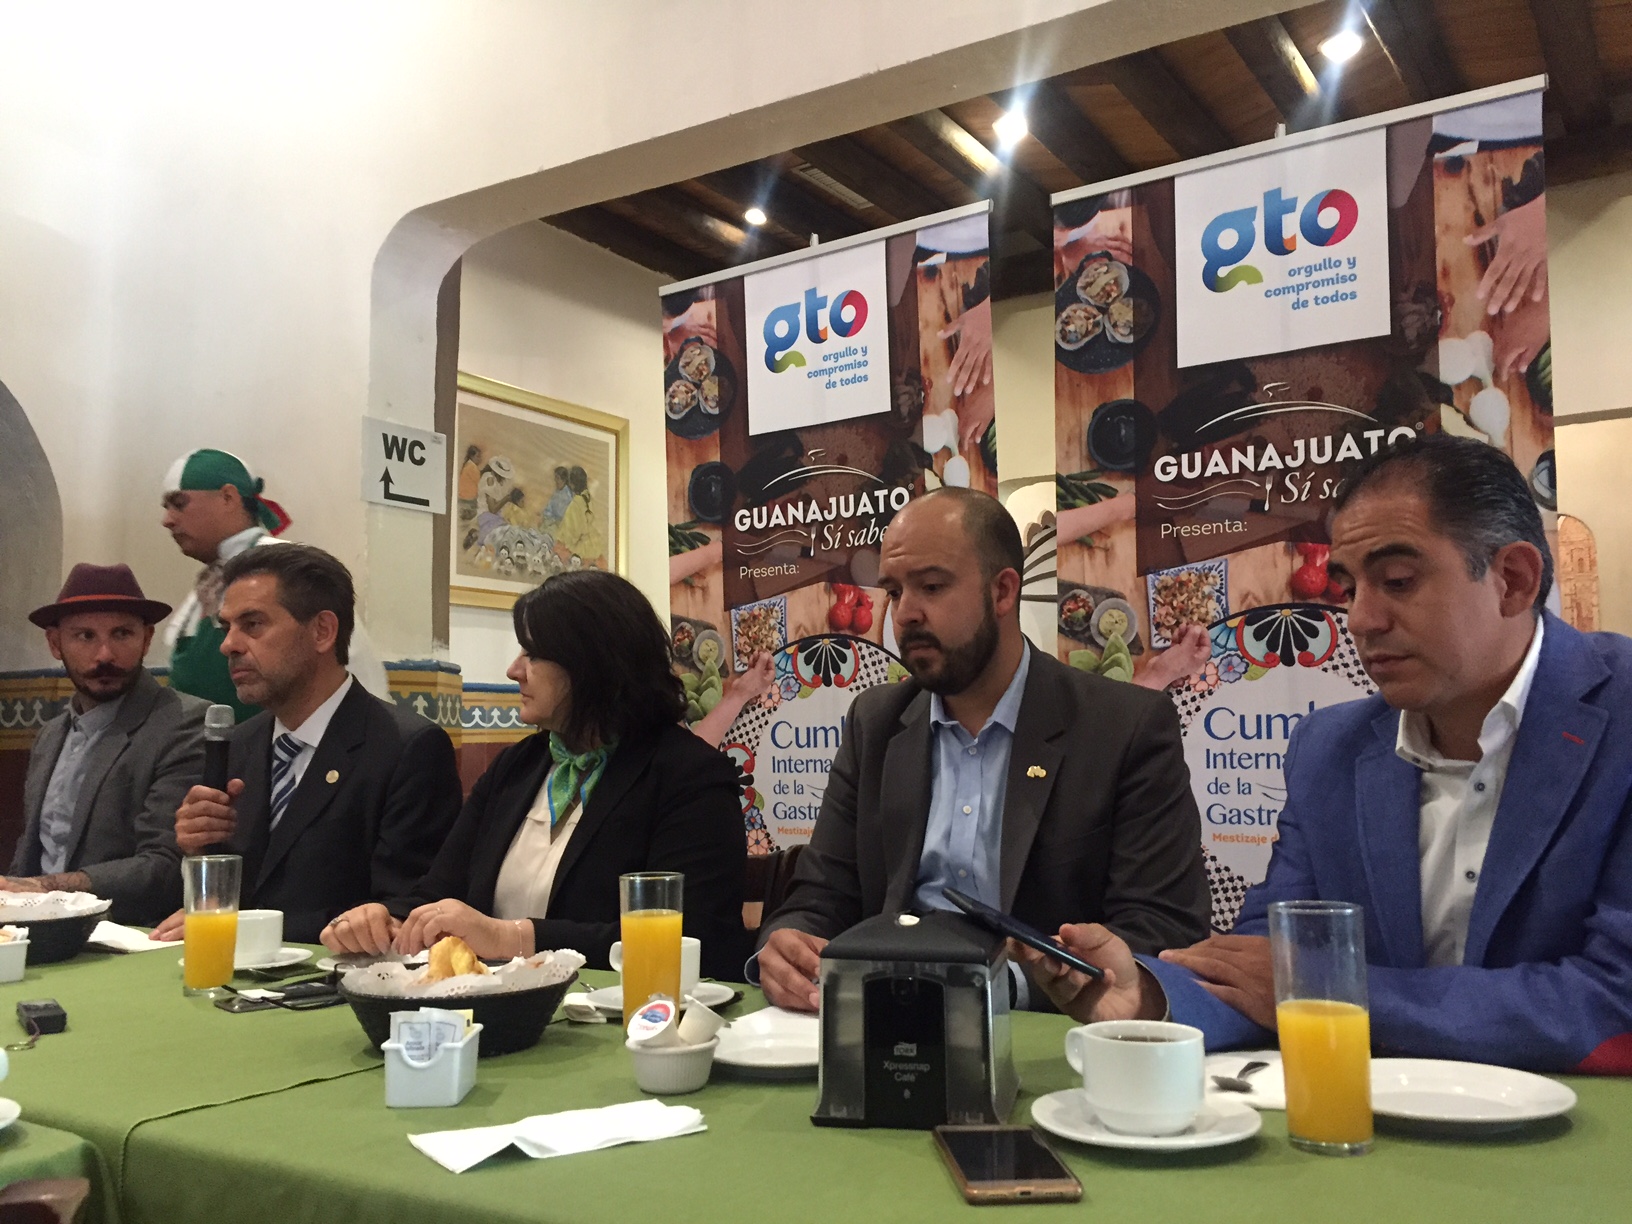  Con “nopal en penca”, Querétaro participará en Cumbre Internacional de la Gastronomía